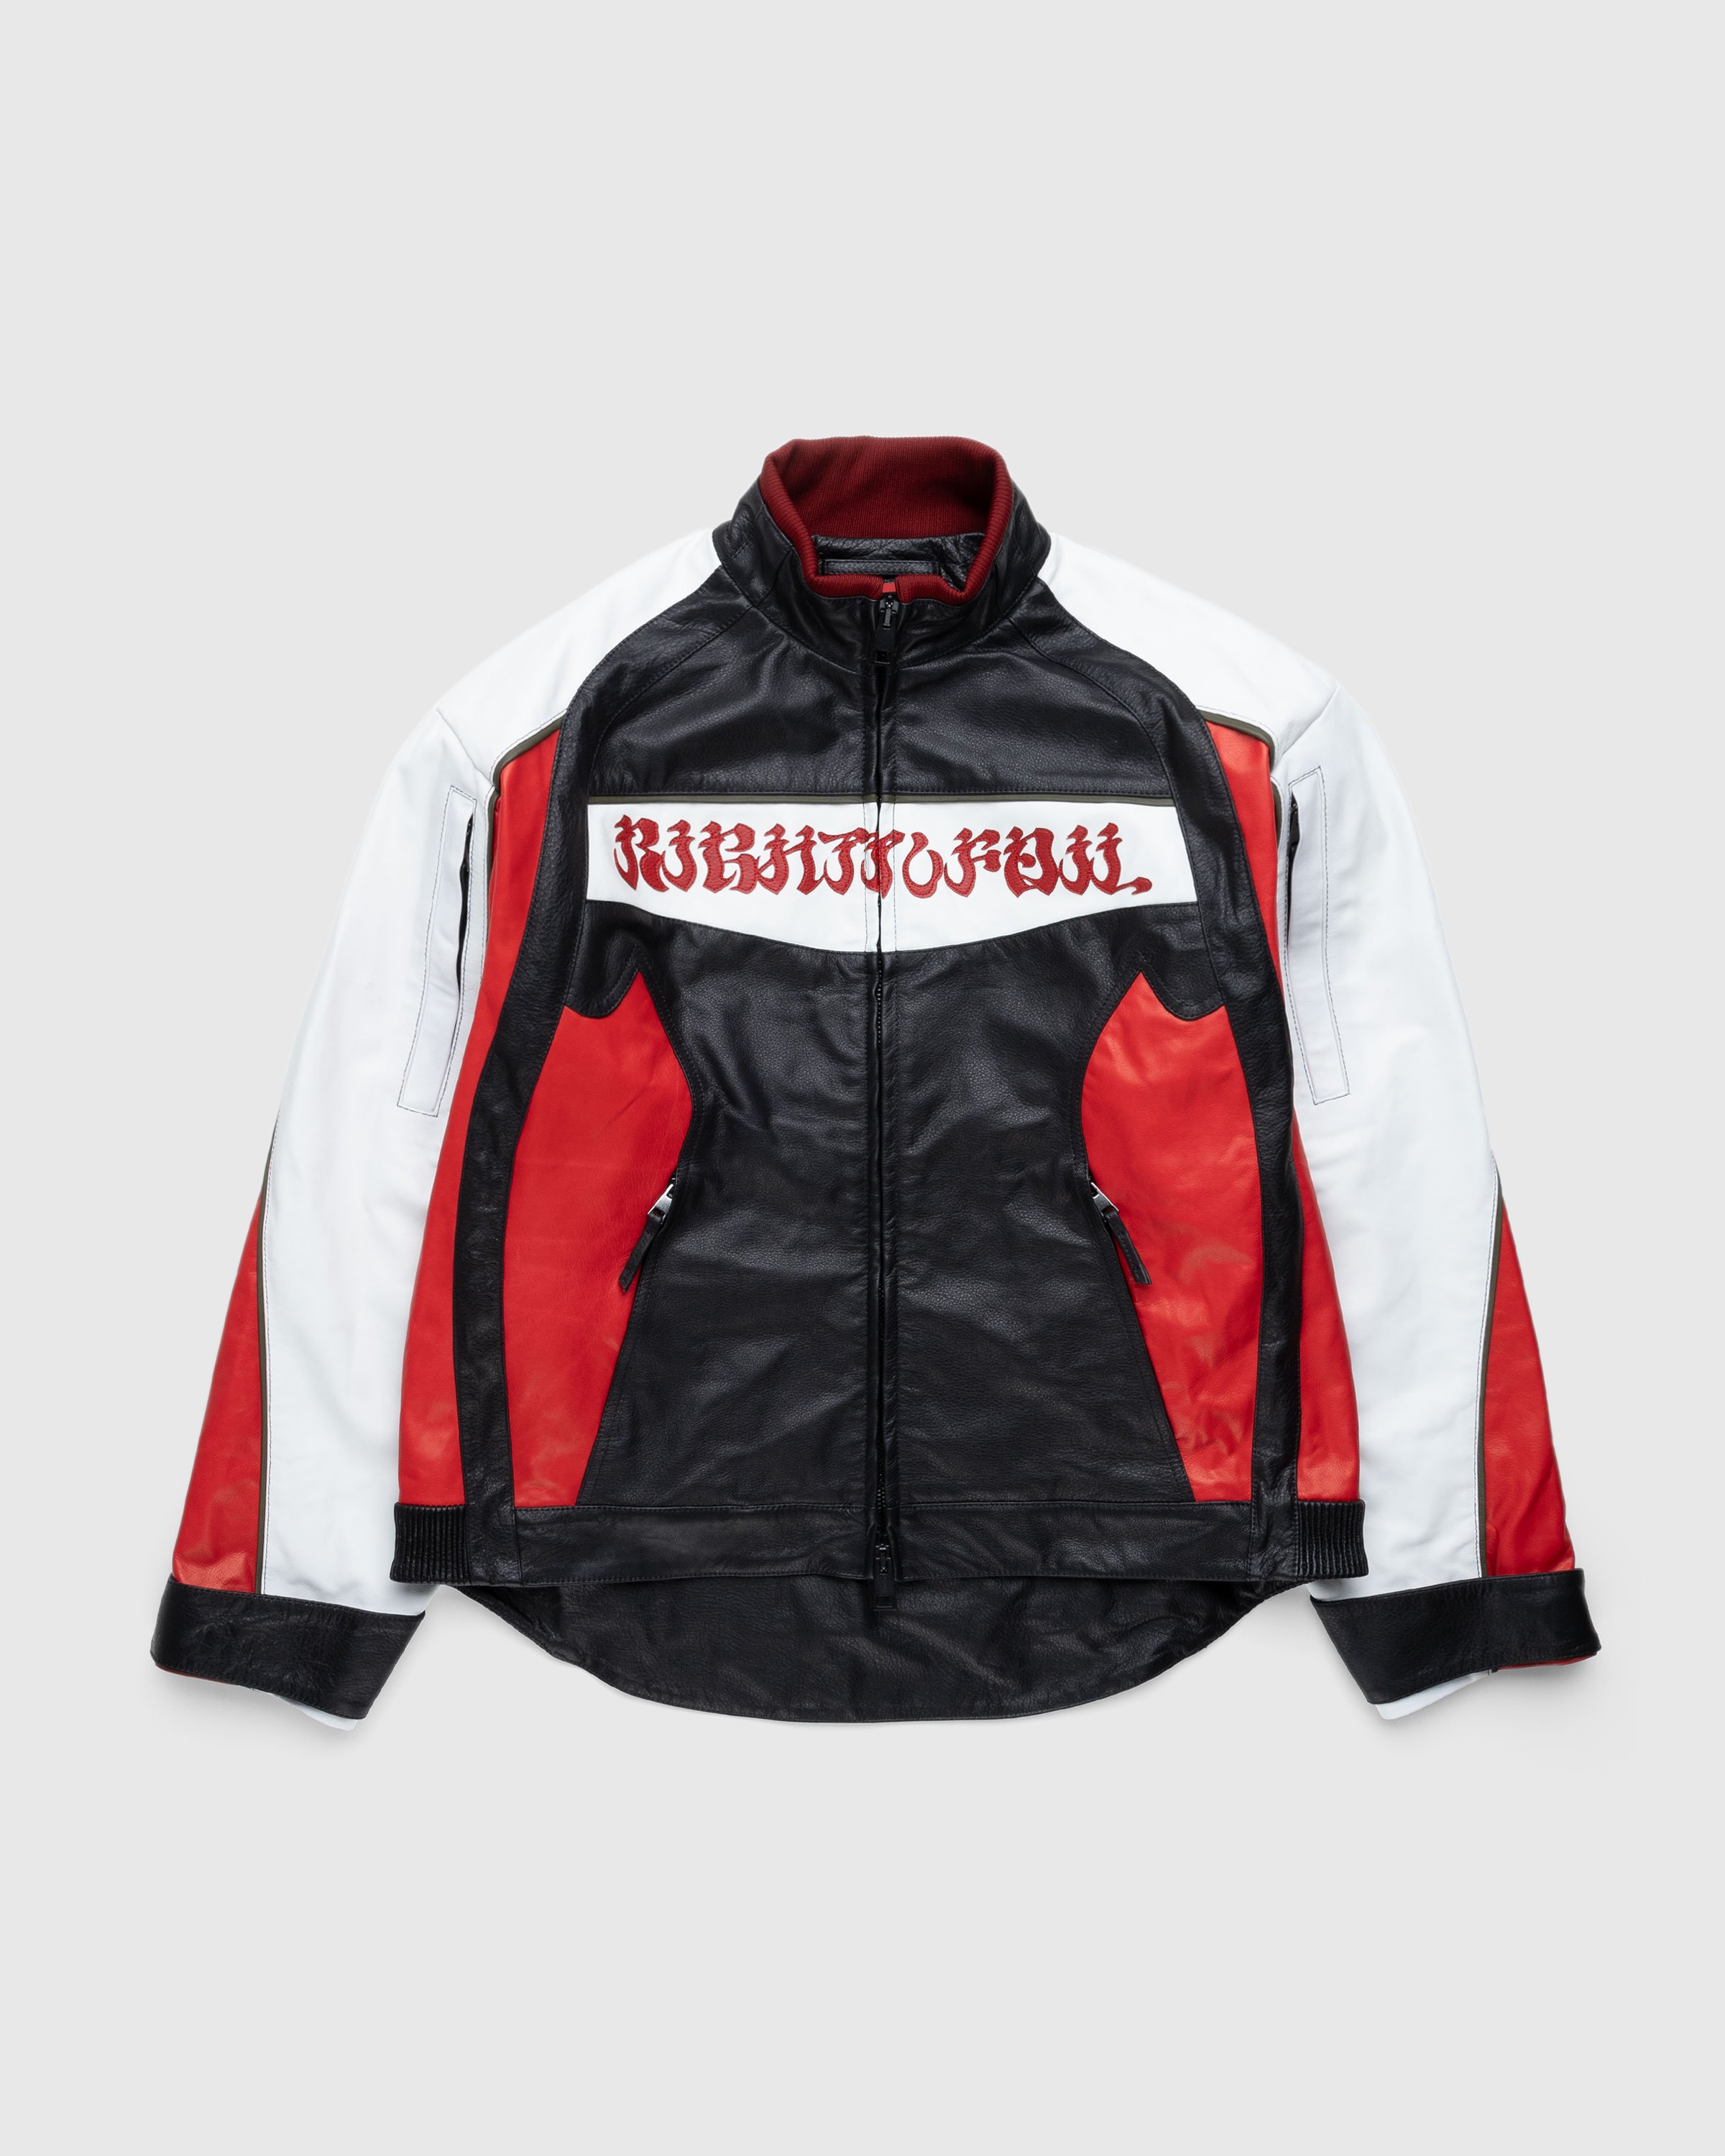 KUSIKOHC - RIDER LEATHER JACKETS - Leather Jackets - RED - Image 1